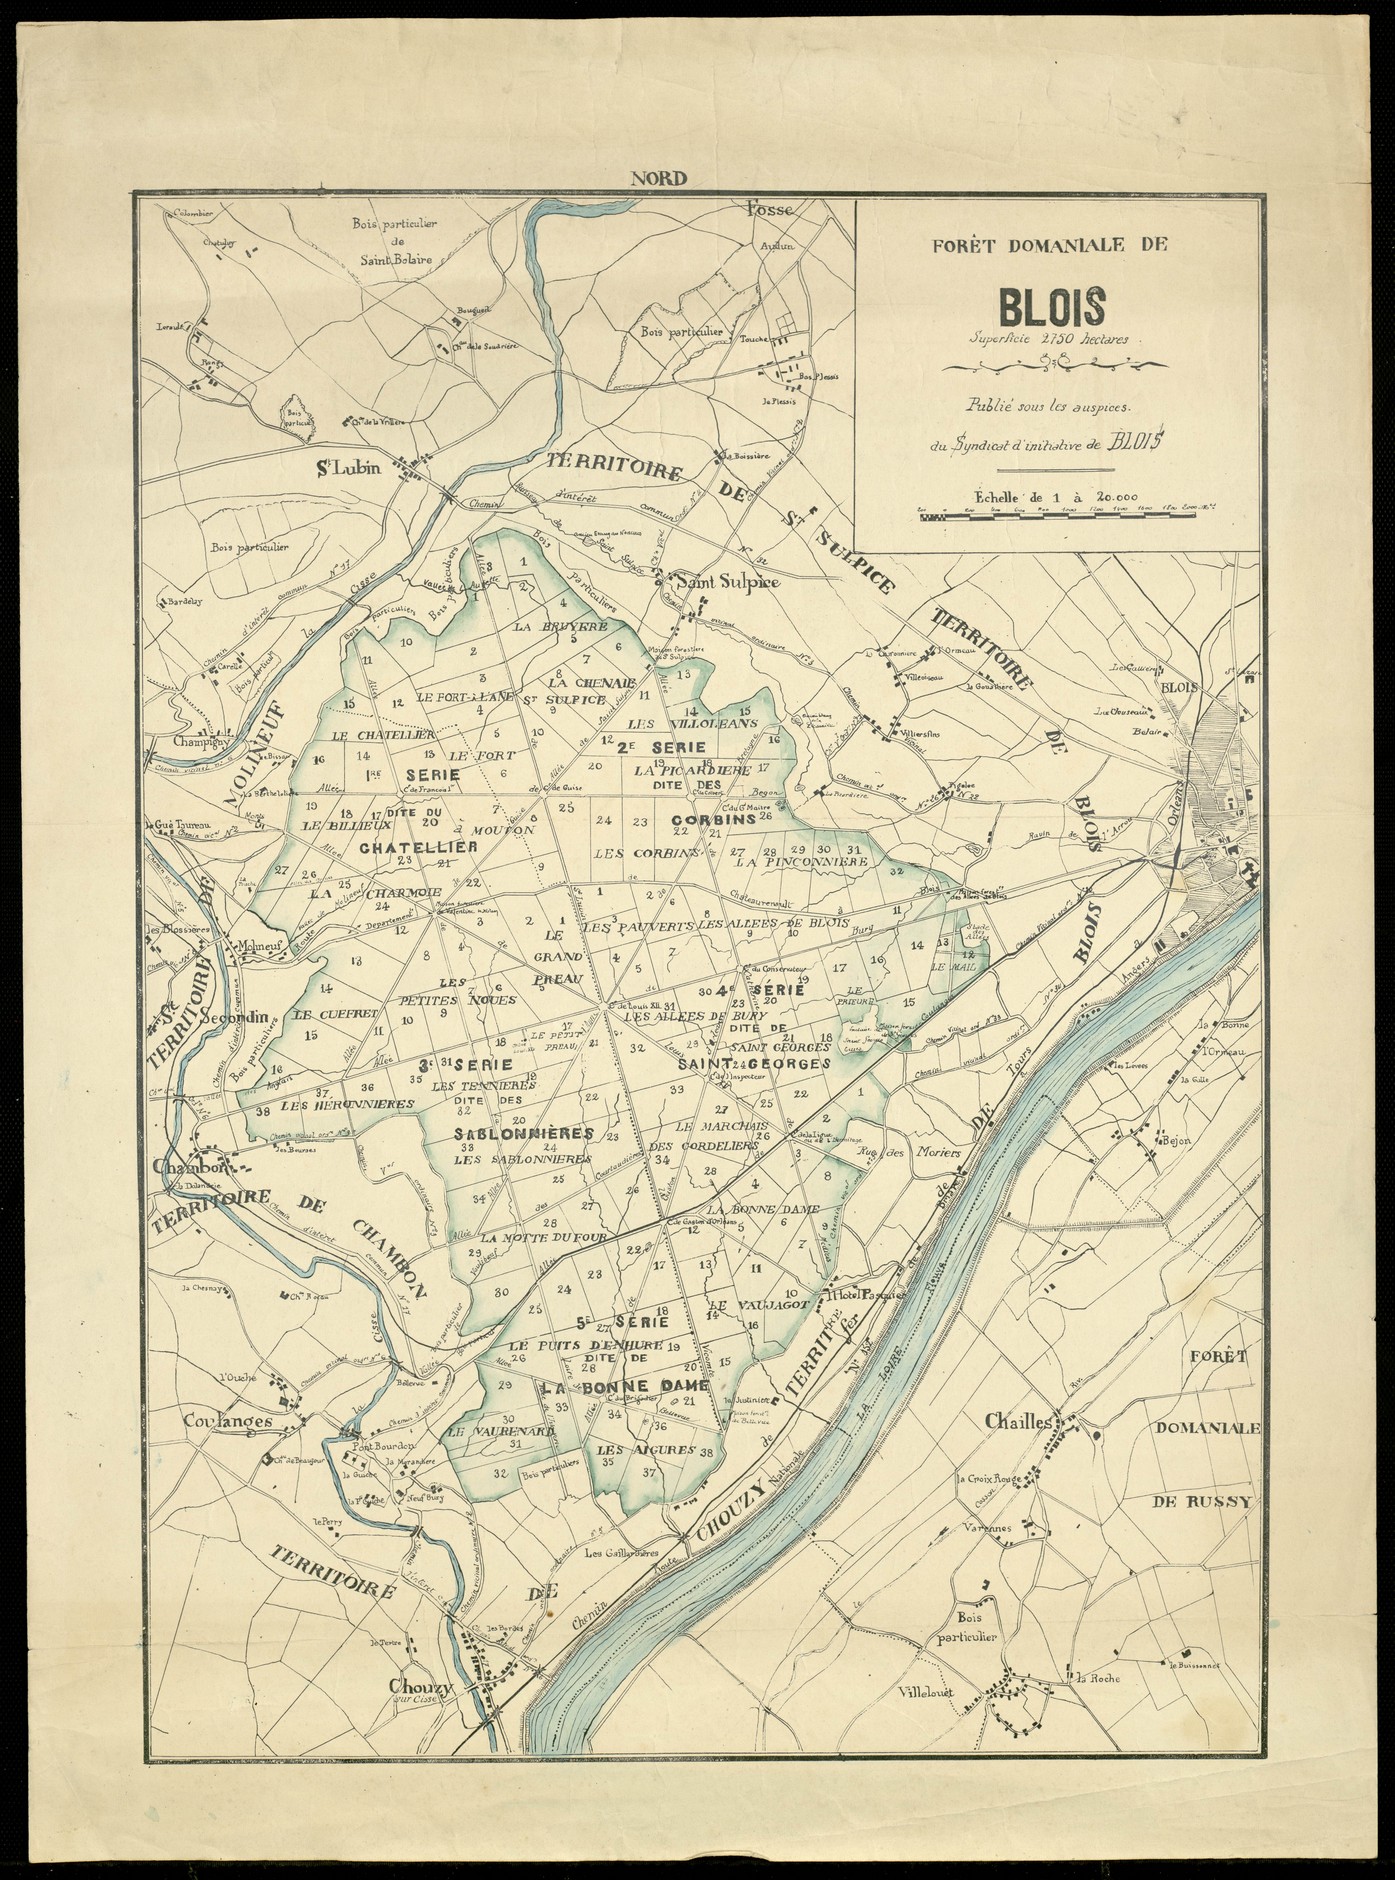 Carte de la forêt de Blois, Syndicat d'initiative de Blois, vers 1920